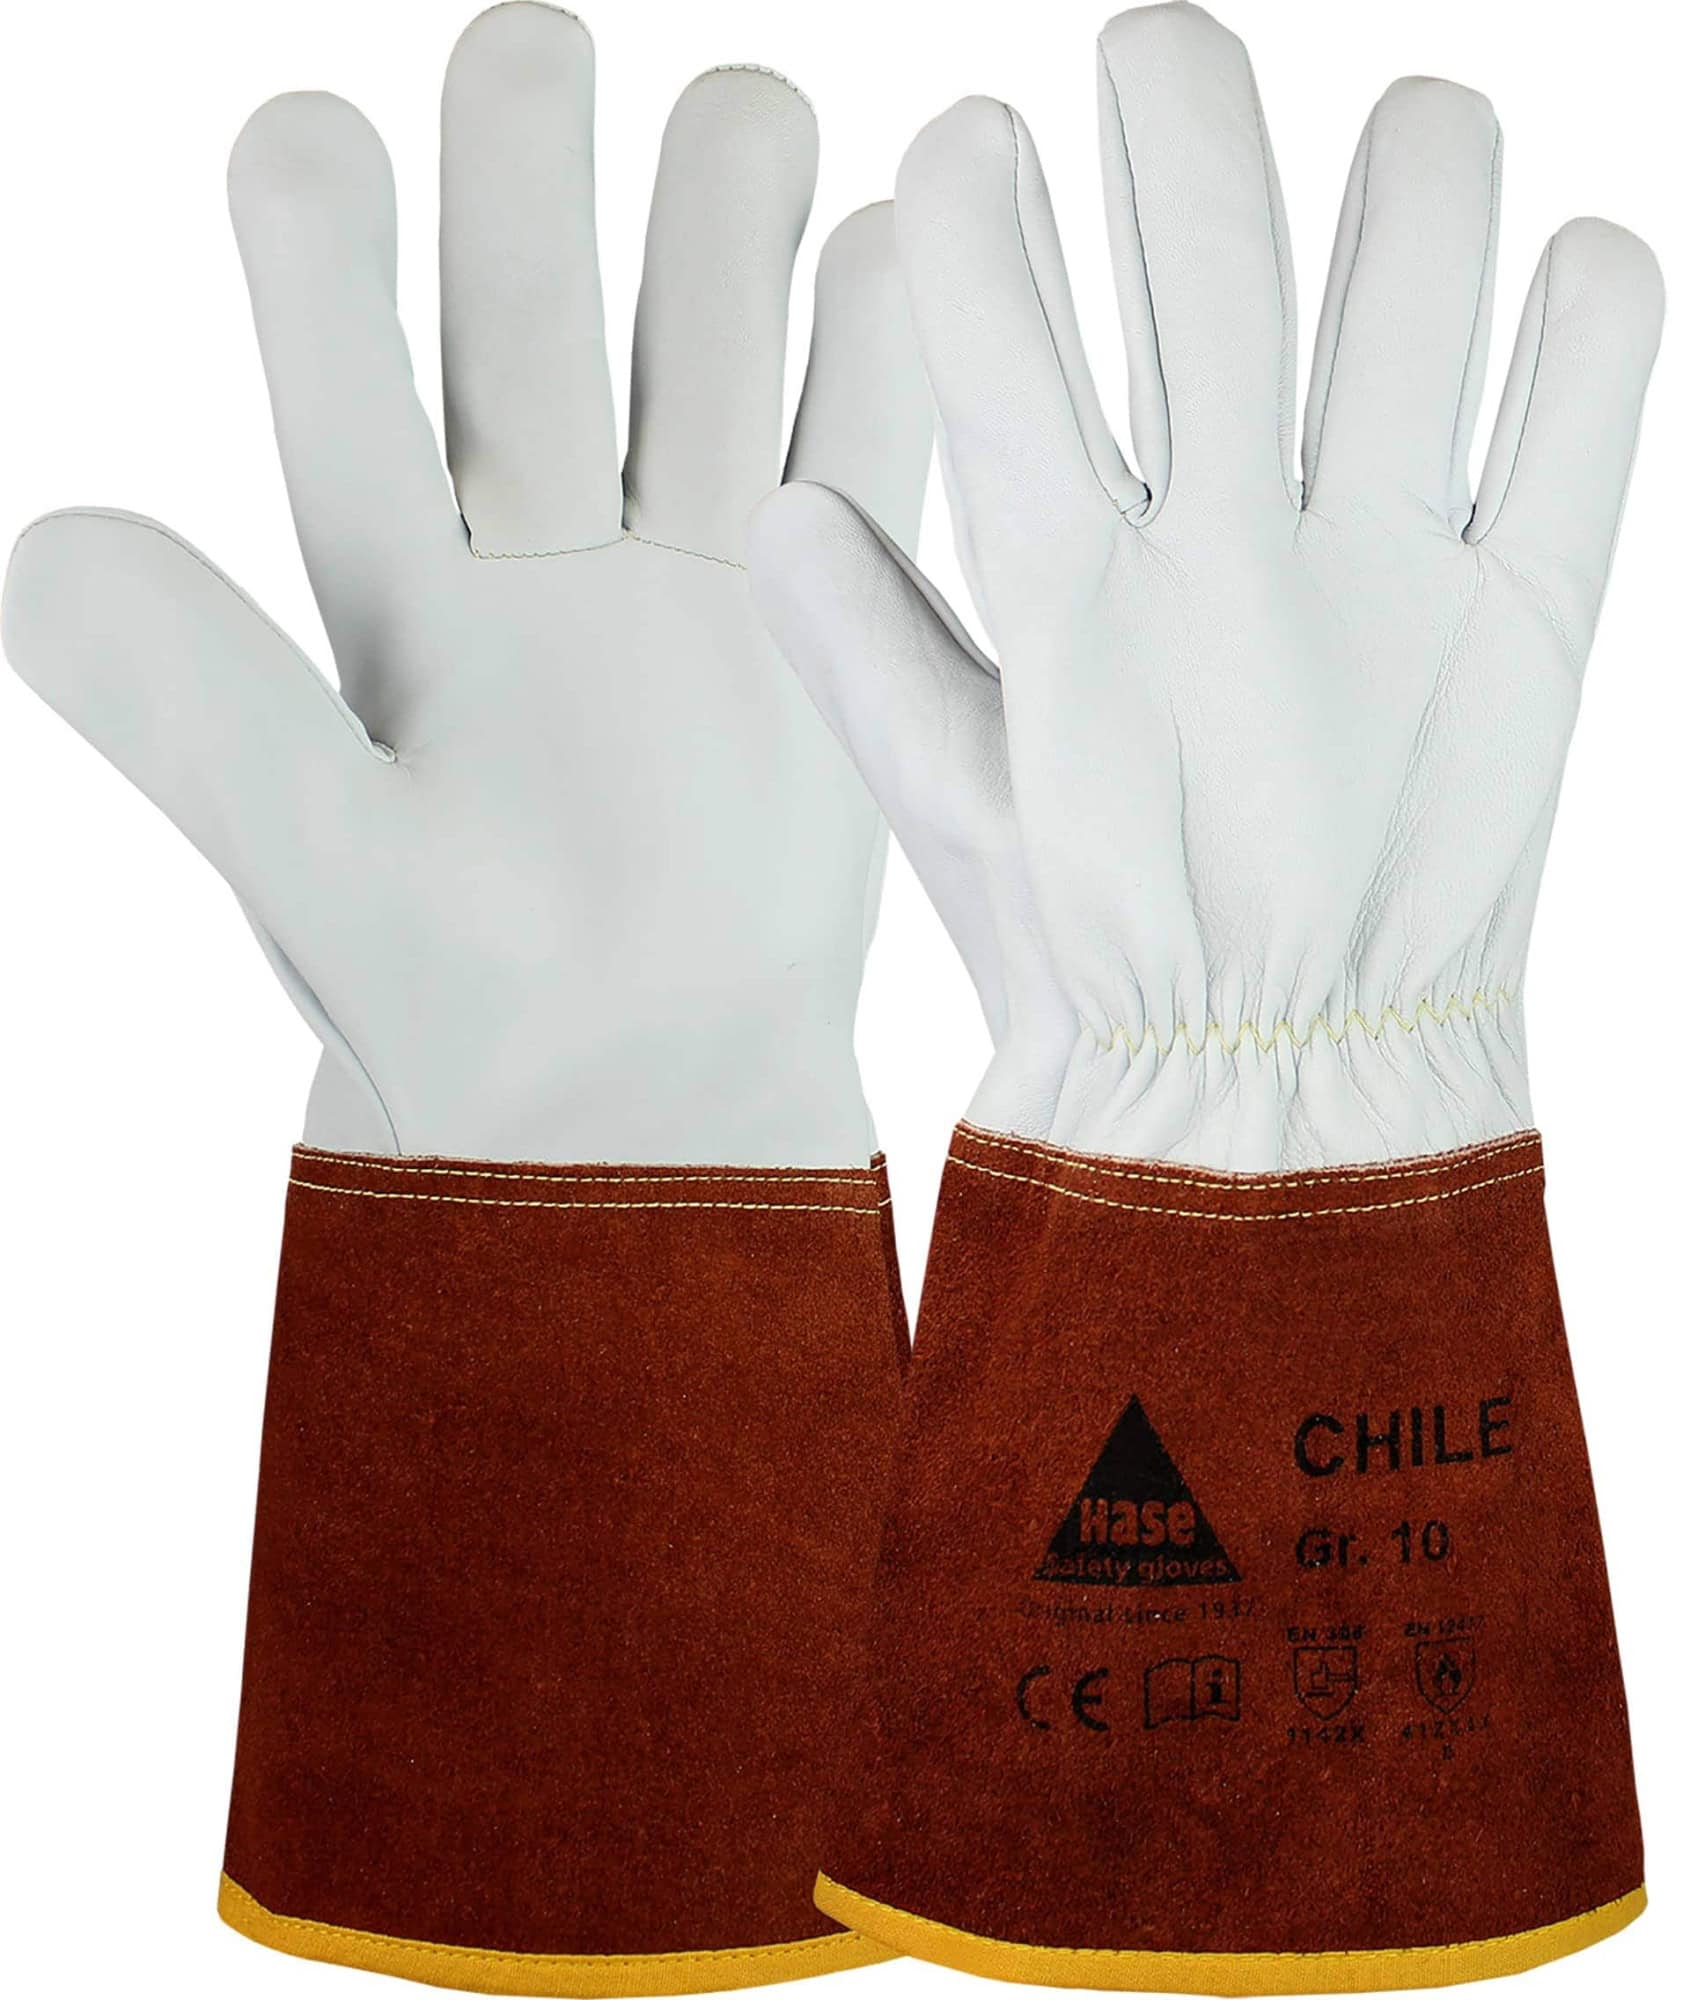 Hase Safety Gloves® CHILE 403840-9, Größe 9, Typ B, Kat. II, Natur/Dunkelbraun, Schweißerhandschuh für leichte Schweißarbeiten